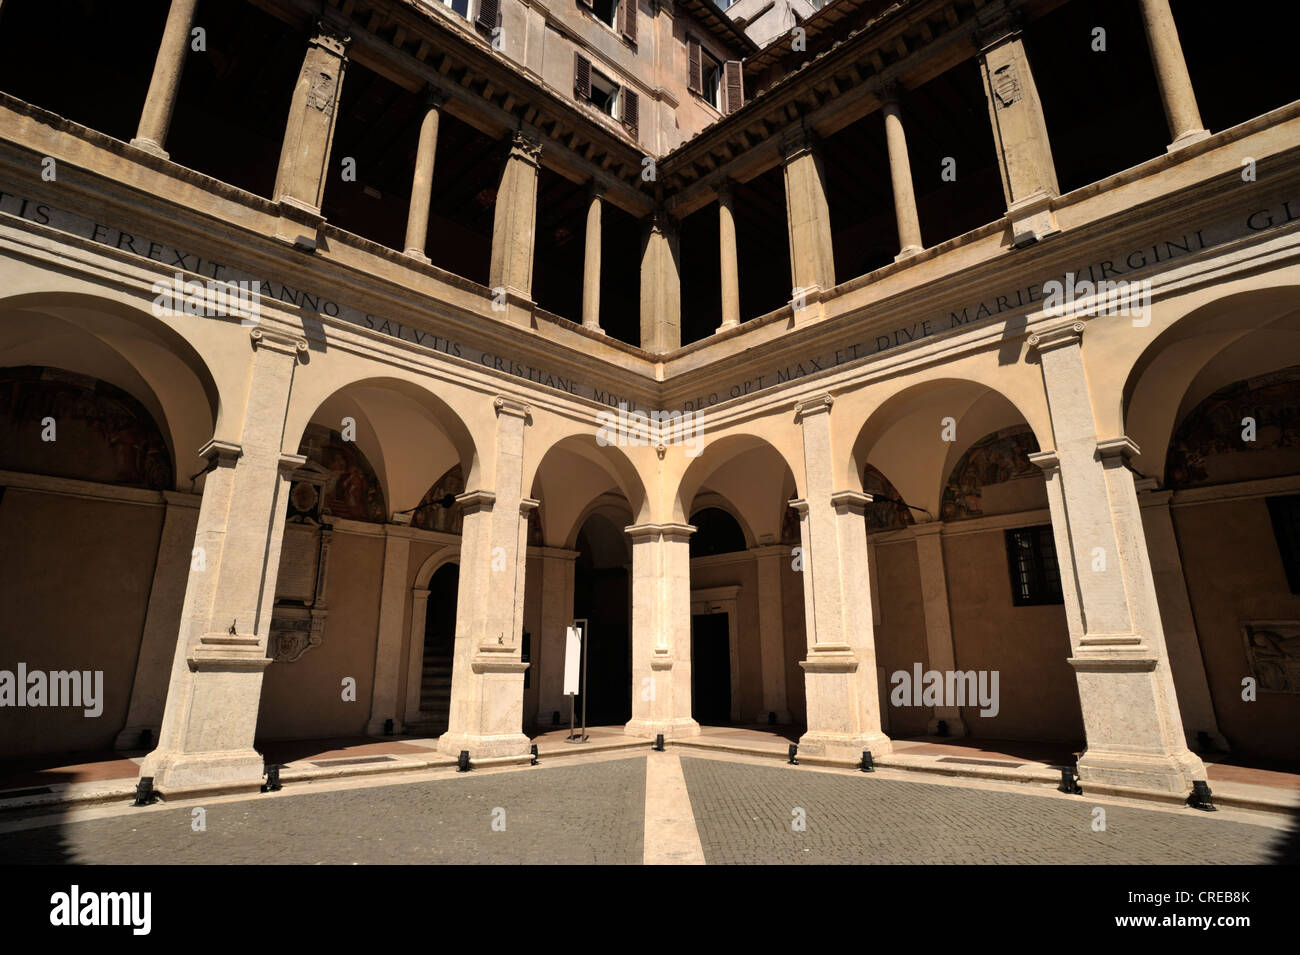 italia, roma, chiostro del bramante, santa maria della pace, claustro renacentista Foto de stock